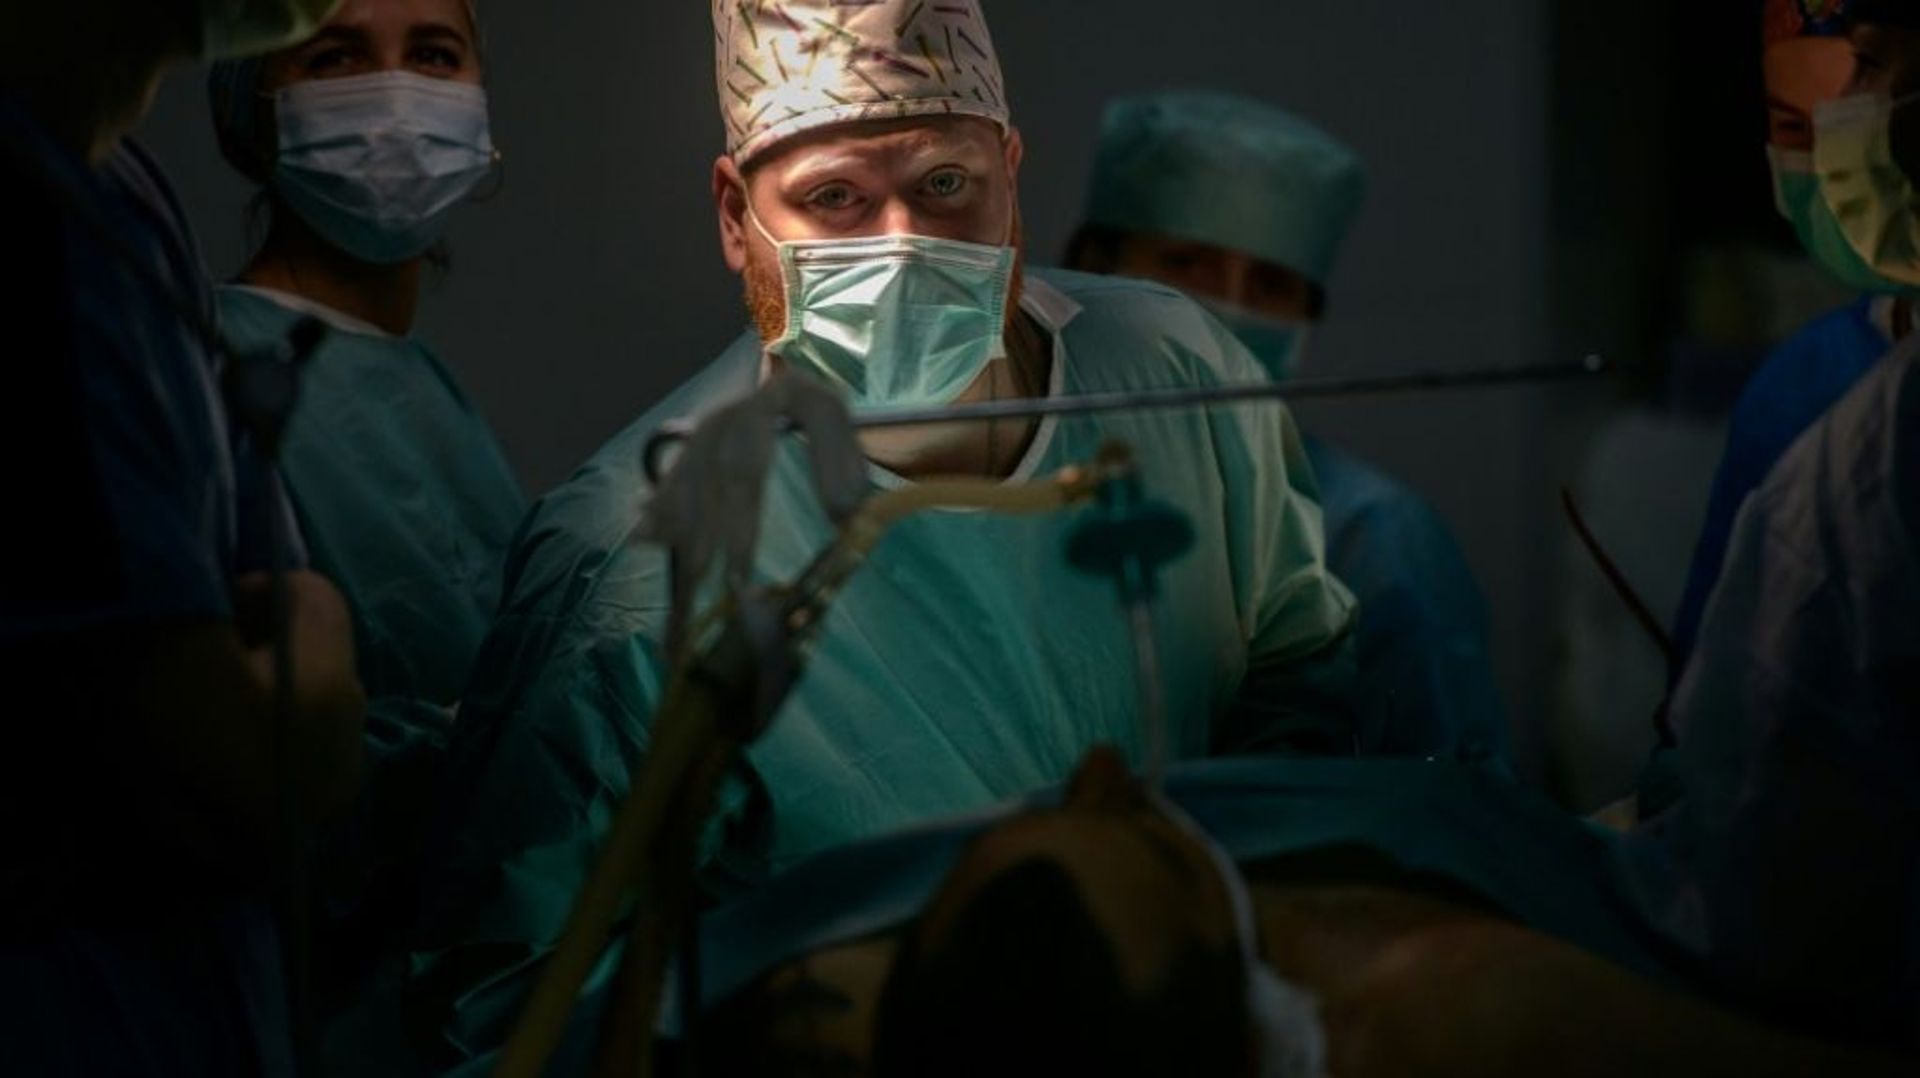 Un chirurgien opère un soldat ukrainien blessé à la jambe à l’hôpital militaire de Zaporijjia, le 18 avril 2022